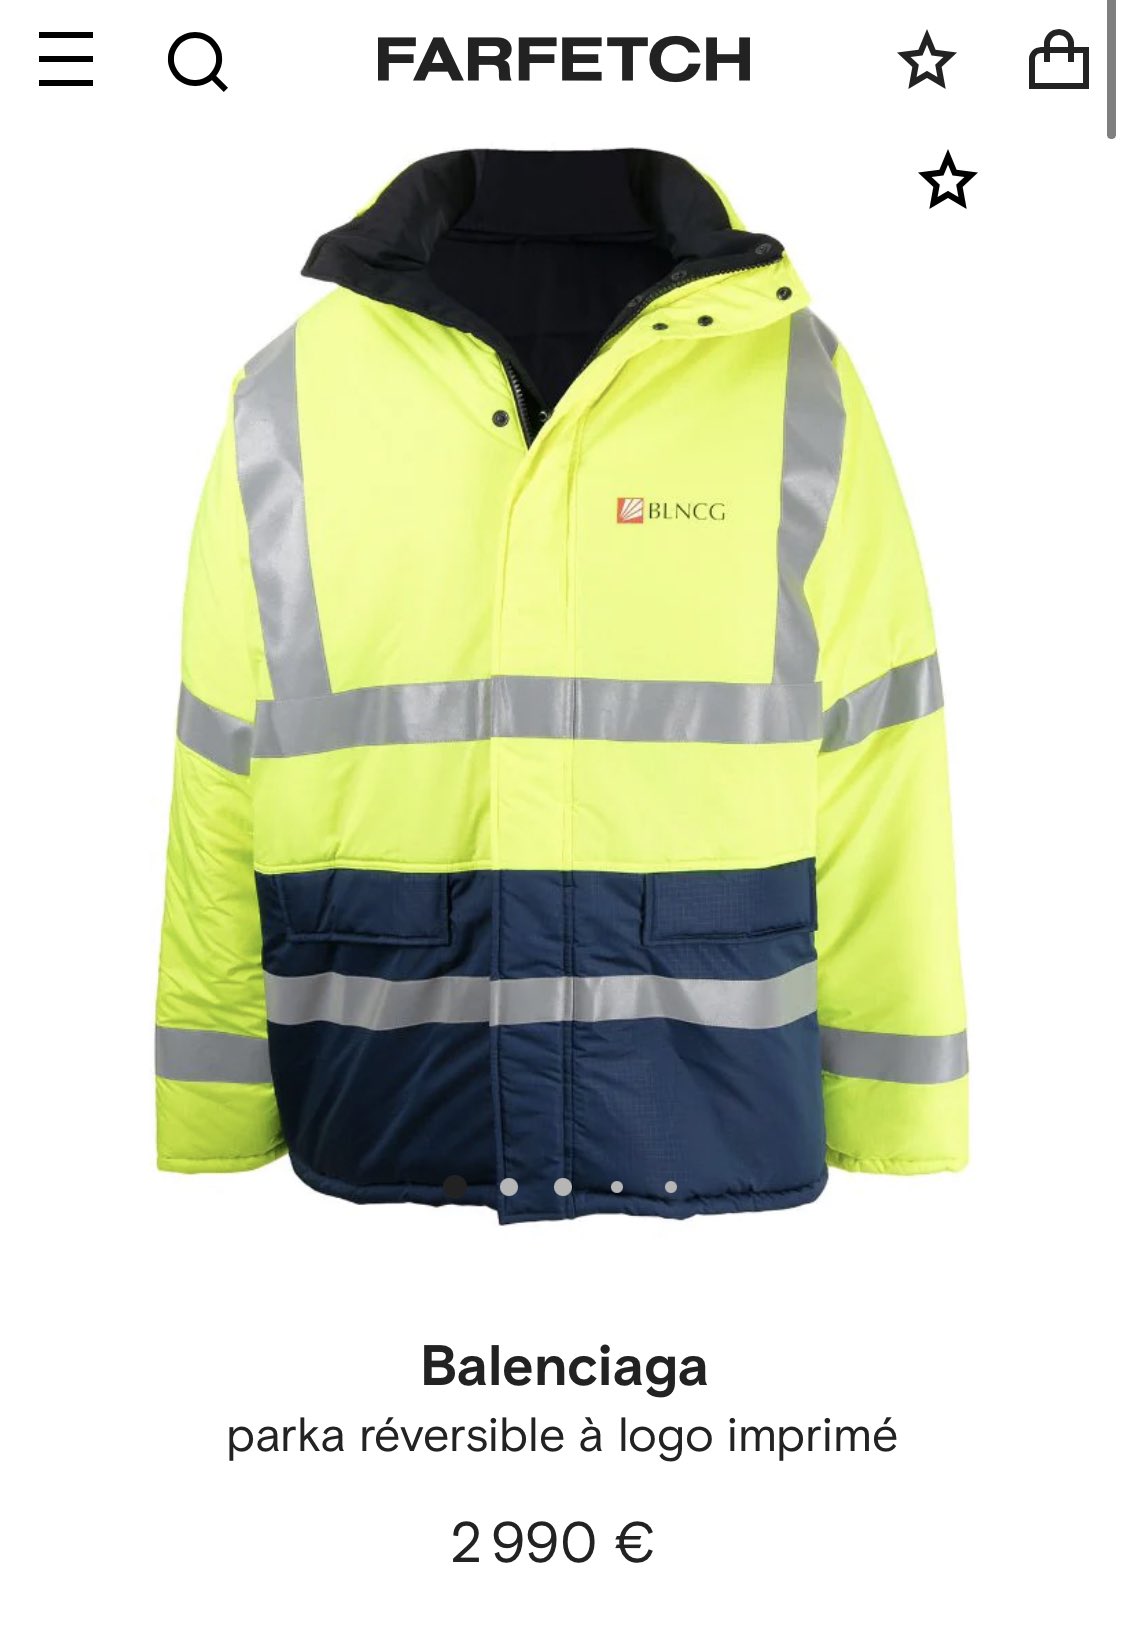 Axel Roux on Twitter: Une veste de chantier fluo Balenciaga à 2990€. Je  crois qu'on tient un @QuelleEpoqueDM de haute volée  https://t.co/JCIMBa6h57 / Twitter